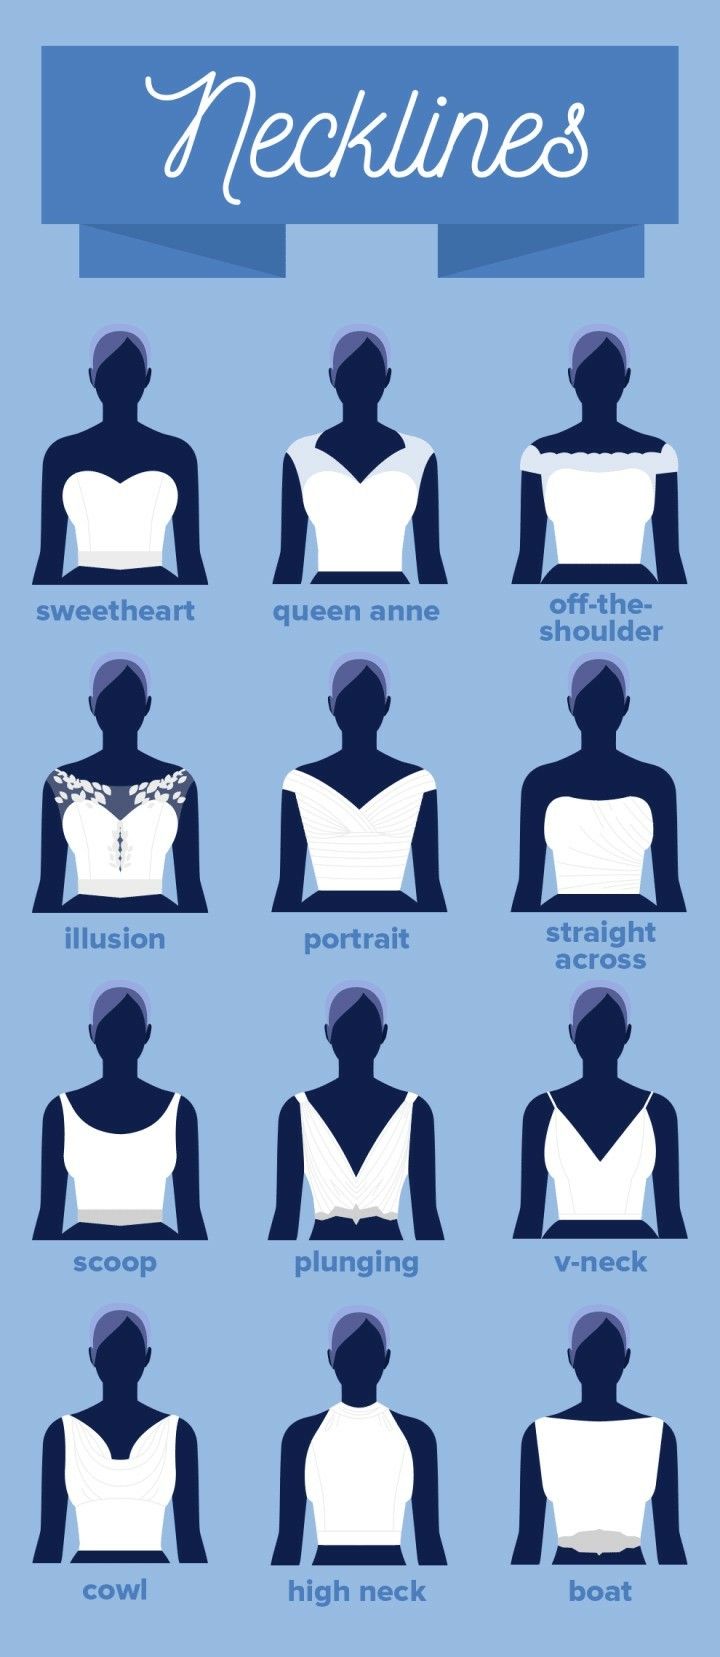 Fashion infographic : Neckline, sweetheart, Queen Anne, off shoulder ...